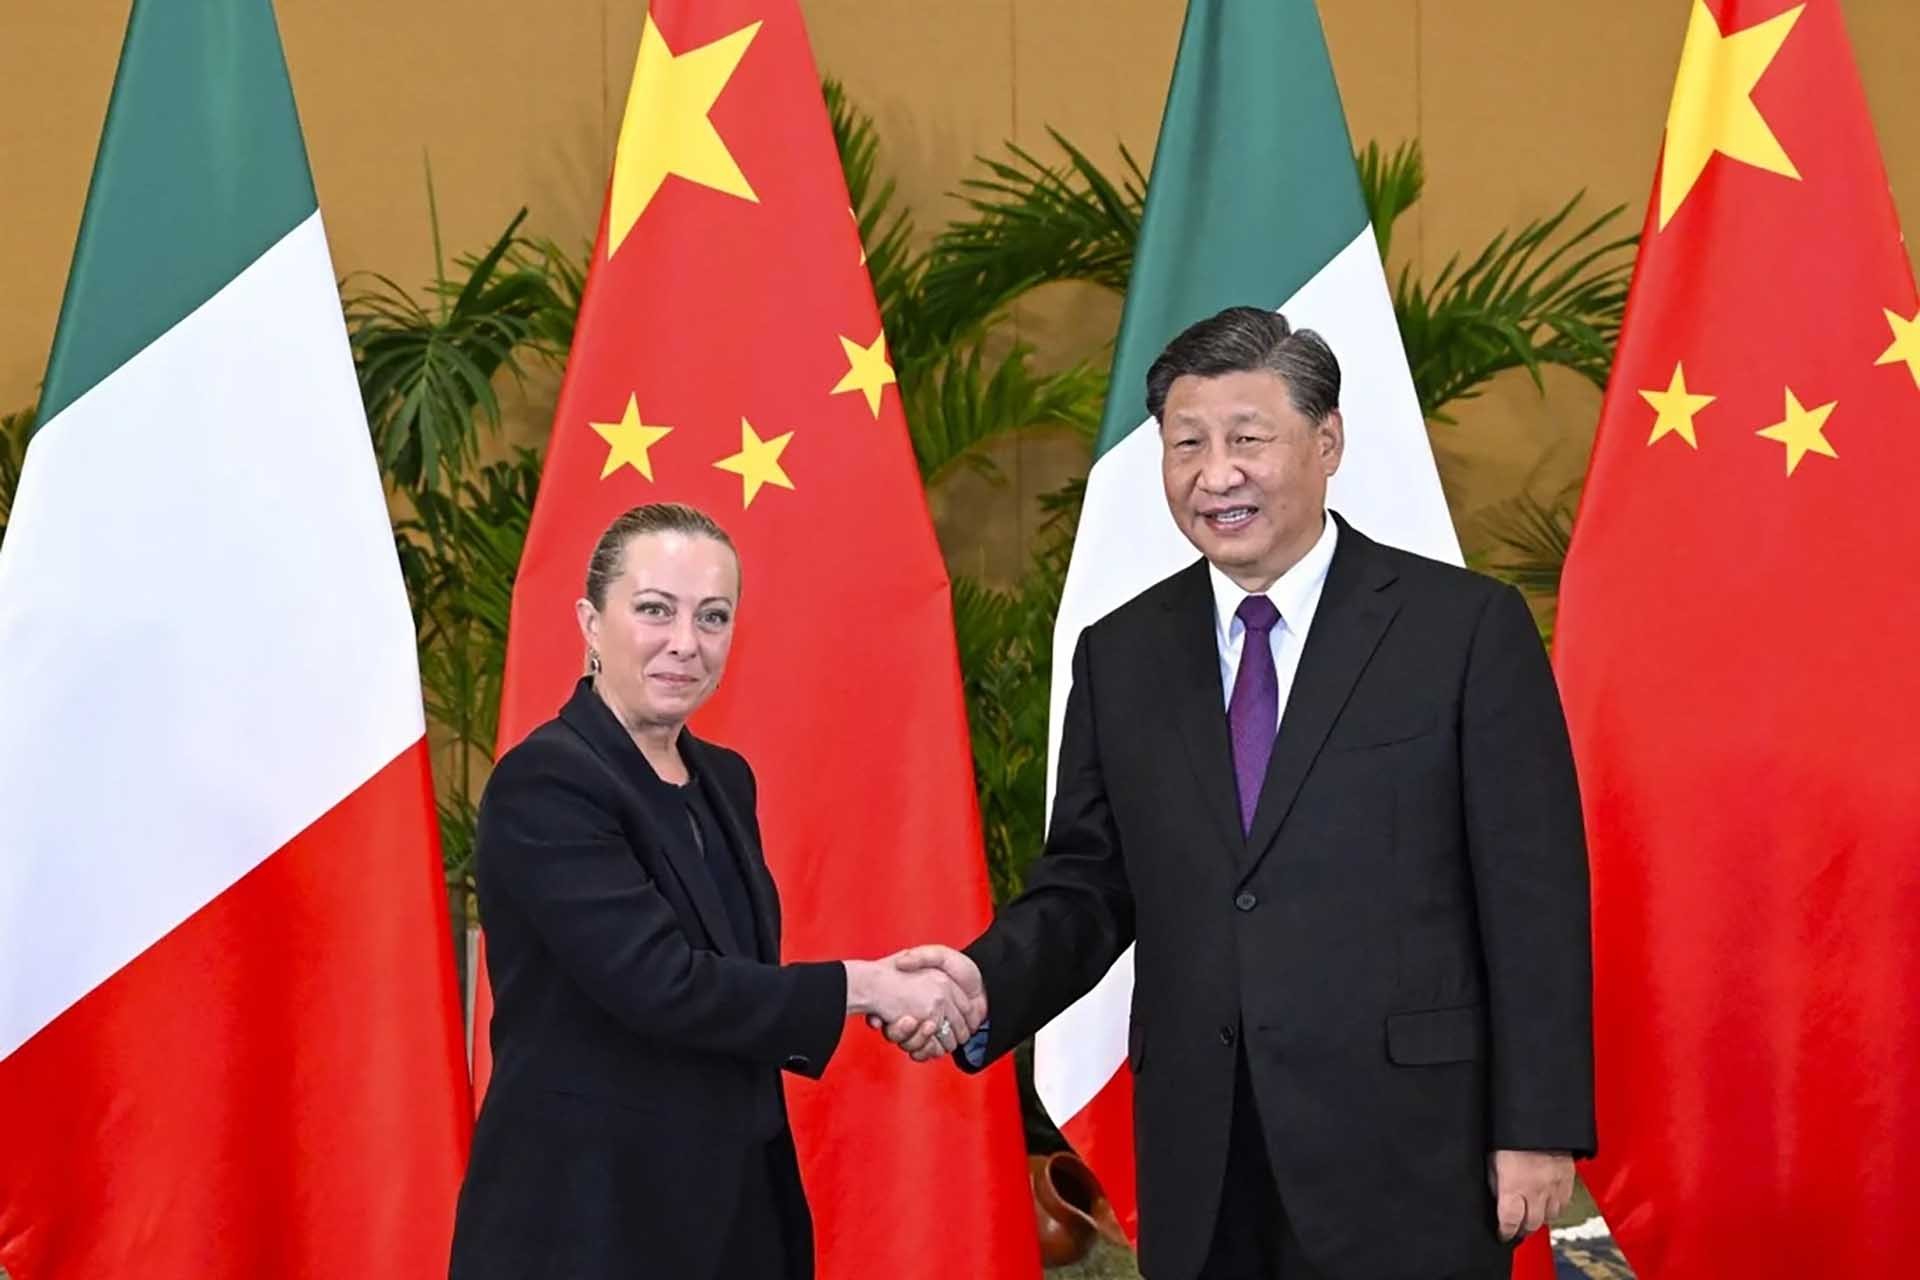 Thủ tướng Italy Giorgia Meloni (trái) gặp Chủ tịch Trung Quốc Tập Cận Bình bên lề Hội nghị thượng đỉnh G20 ở Bali, Indonesia tháng 11/2022. (Nguồn: Tân Hoa xã)